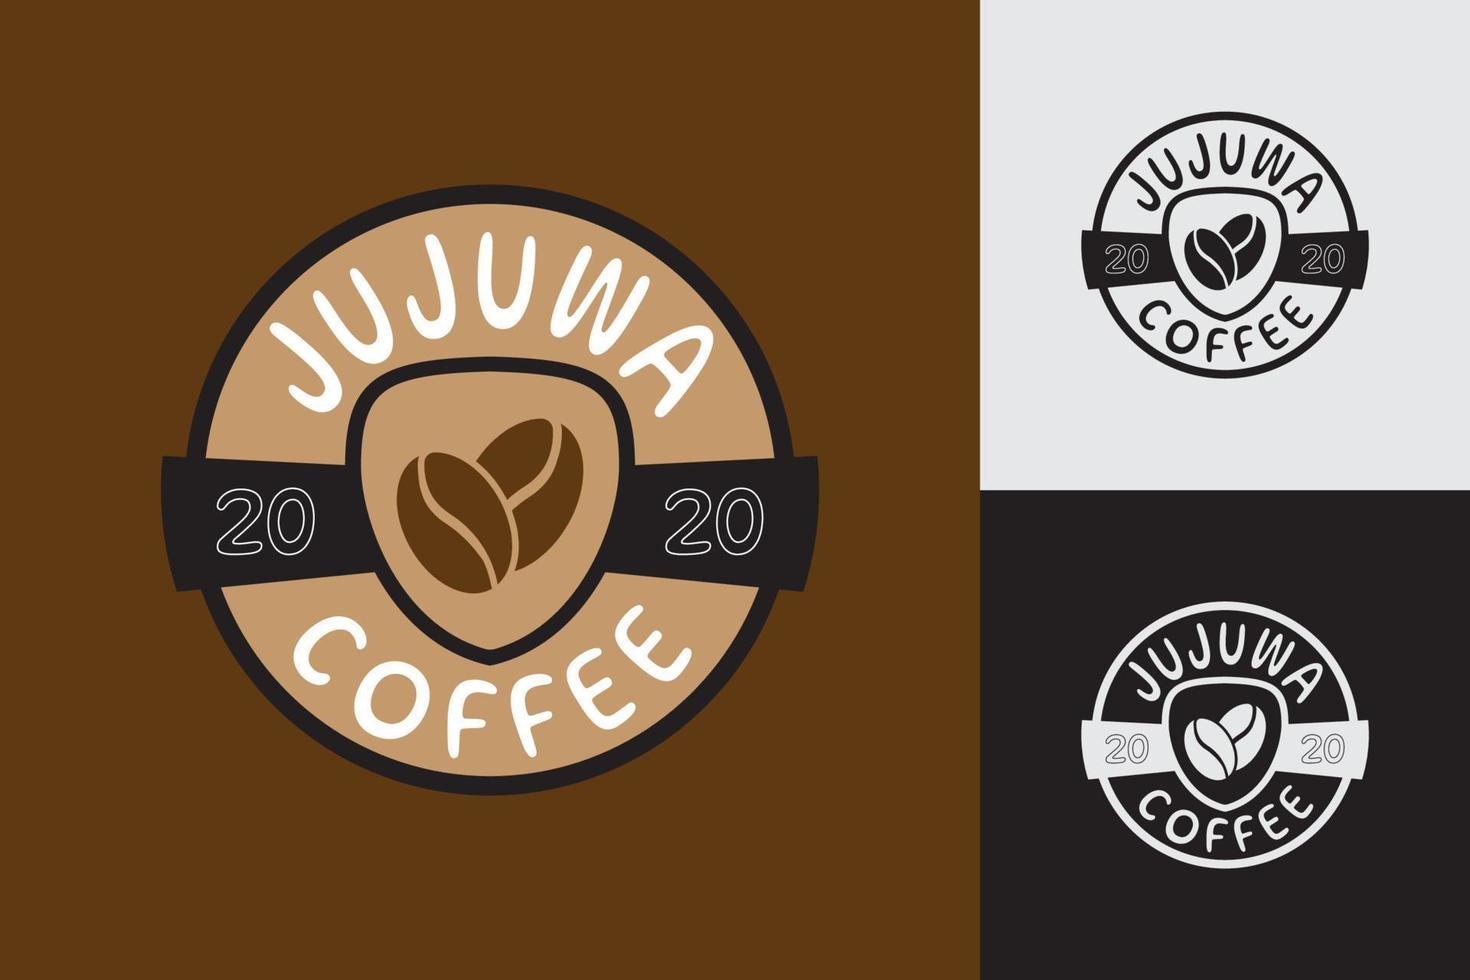 logo di chicchi di caffè jujuwa logo di caffetteria e caffetteria vettore